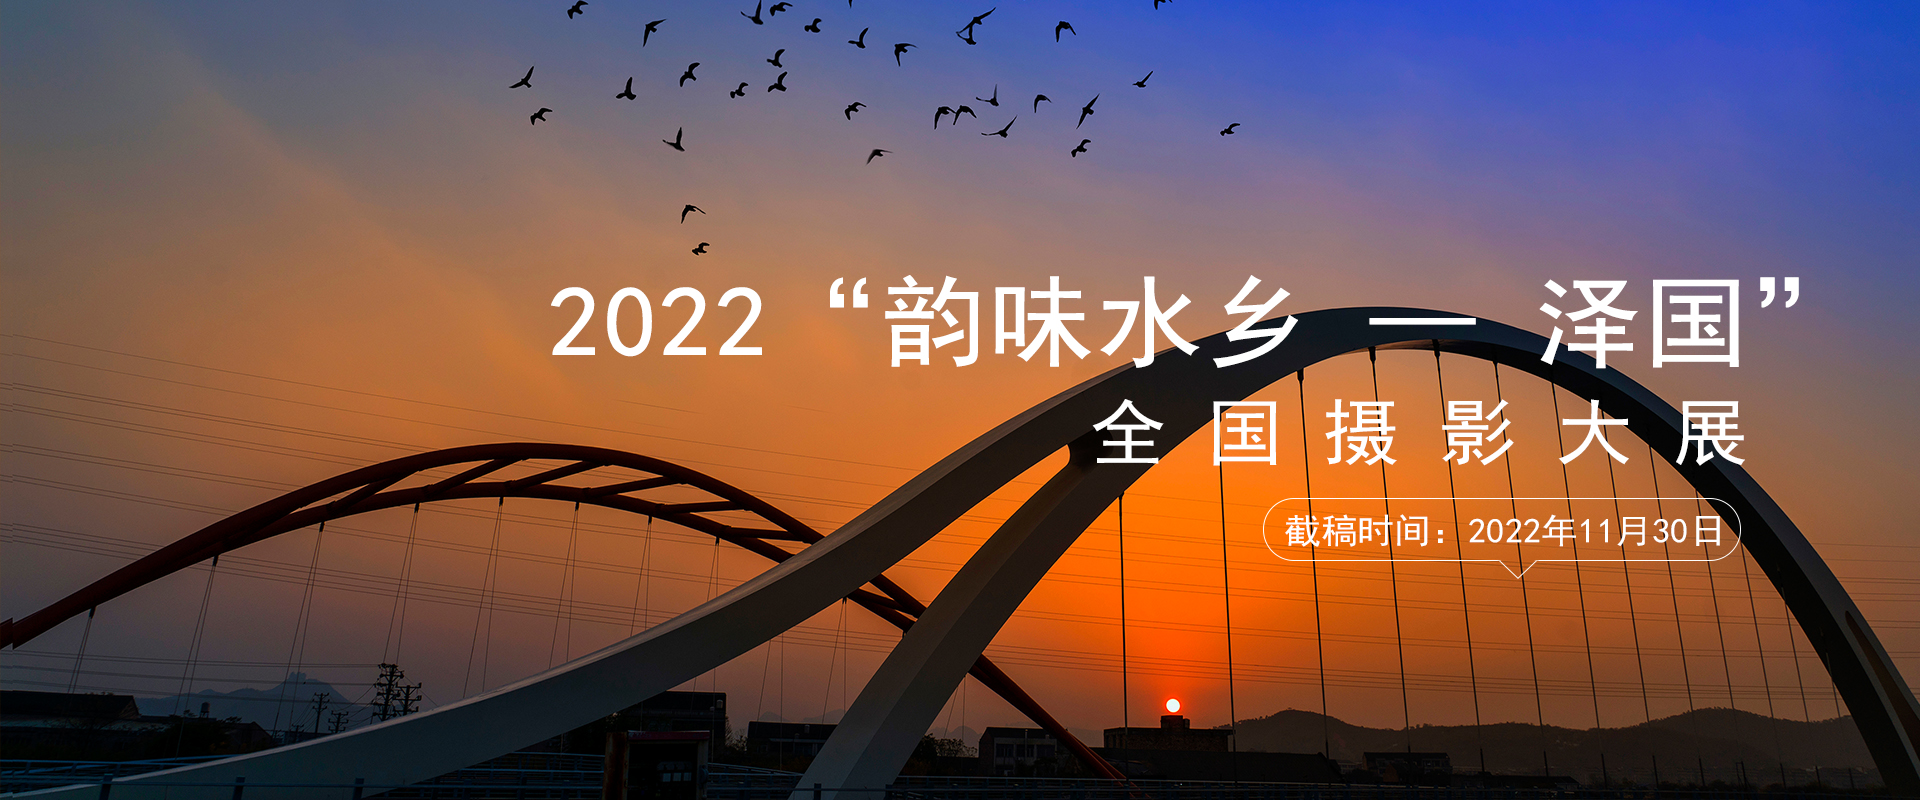 2022“韵味水乡——泽国”全国摄影大展